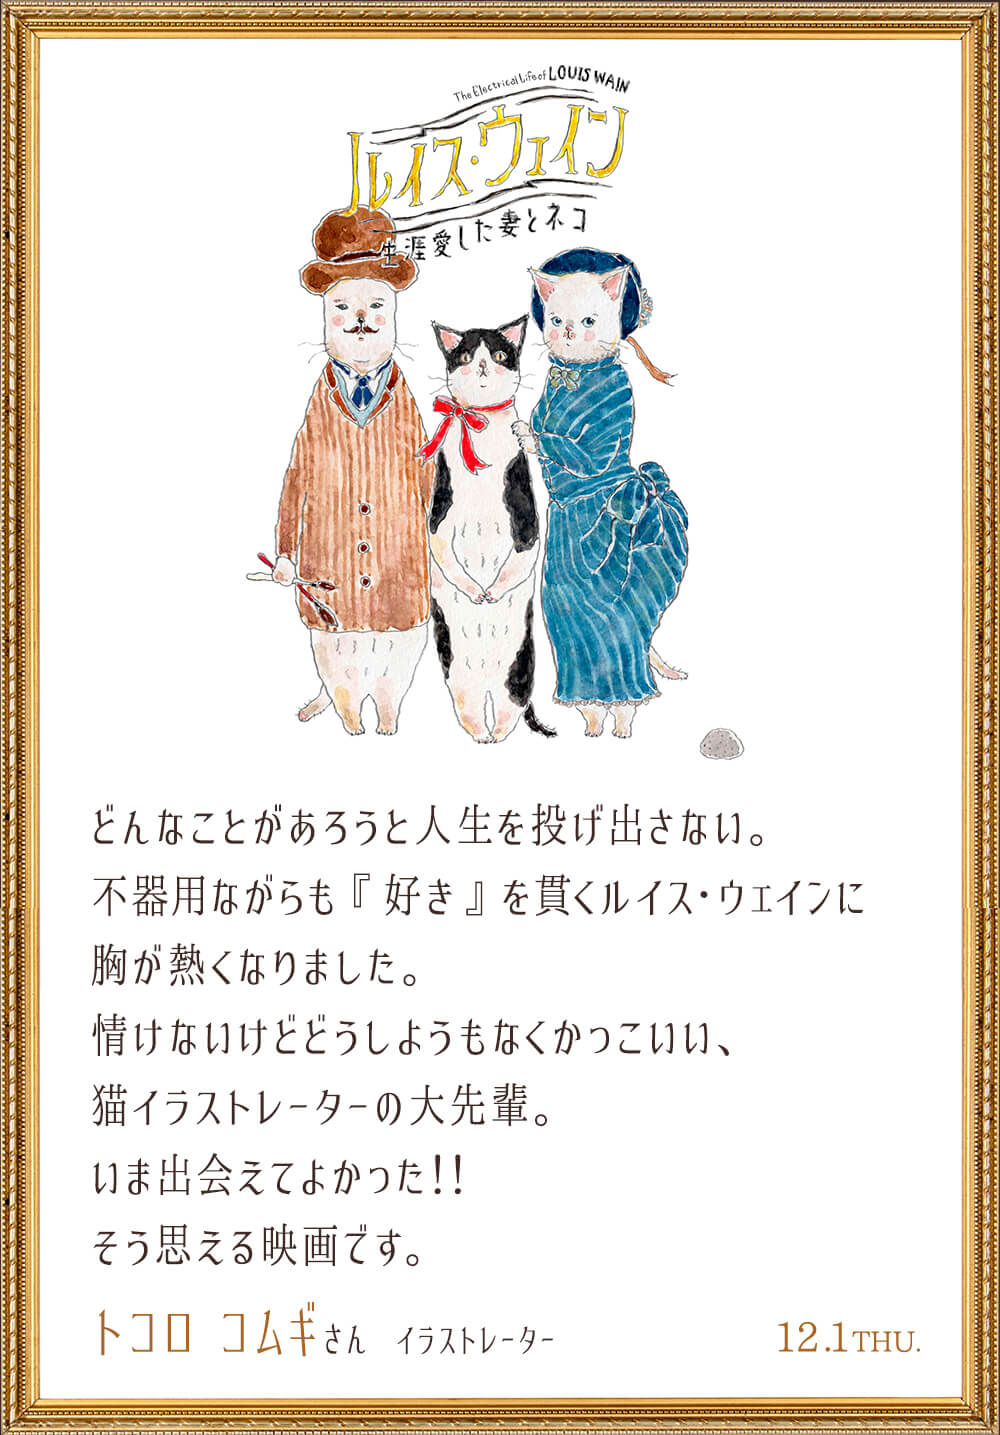 映画『ルイス・ウェイン 生涯愛した妻とネコ』のイラスト付き感想コメント by トコロ コムギ